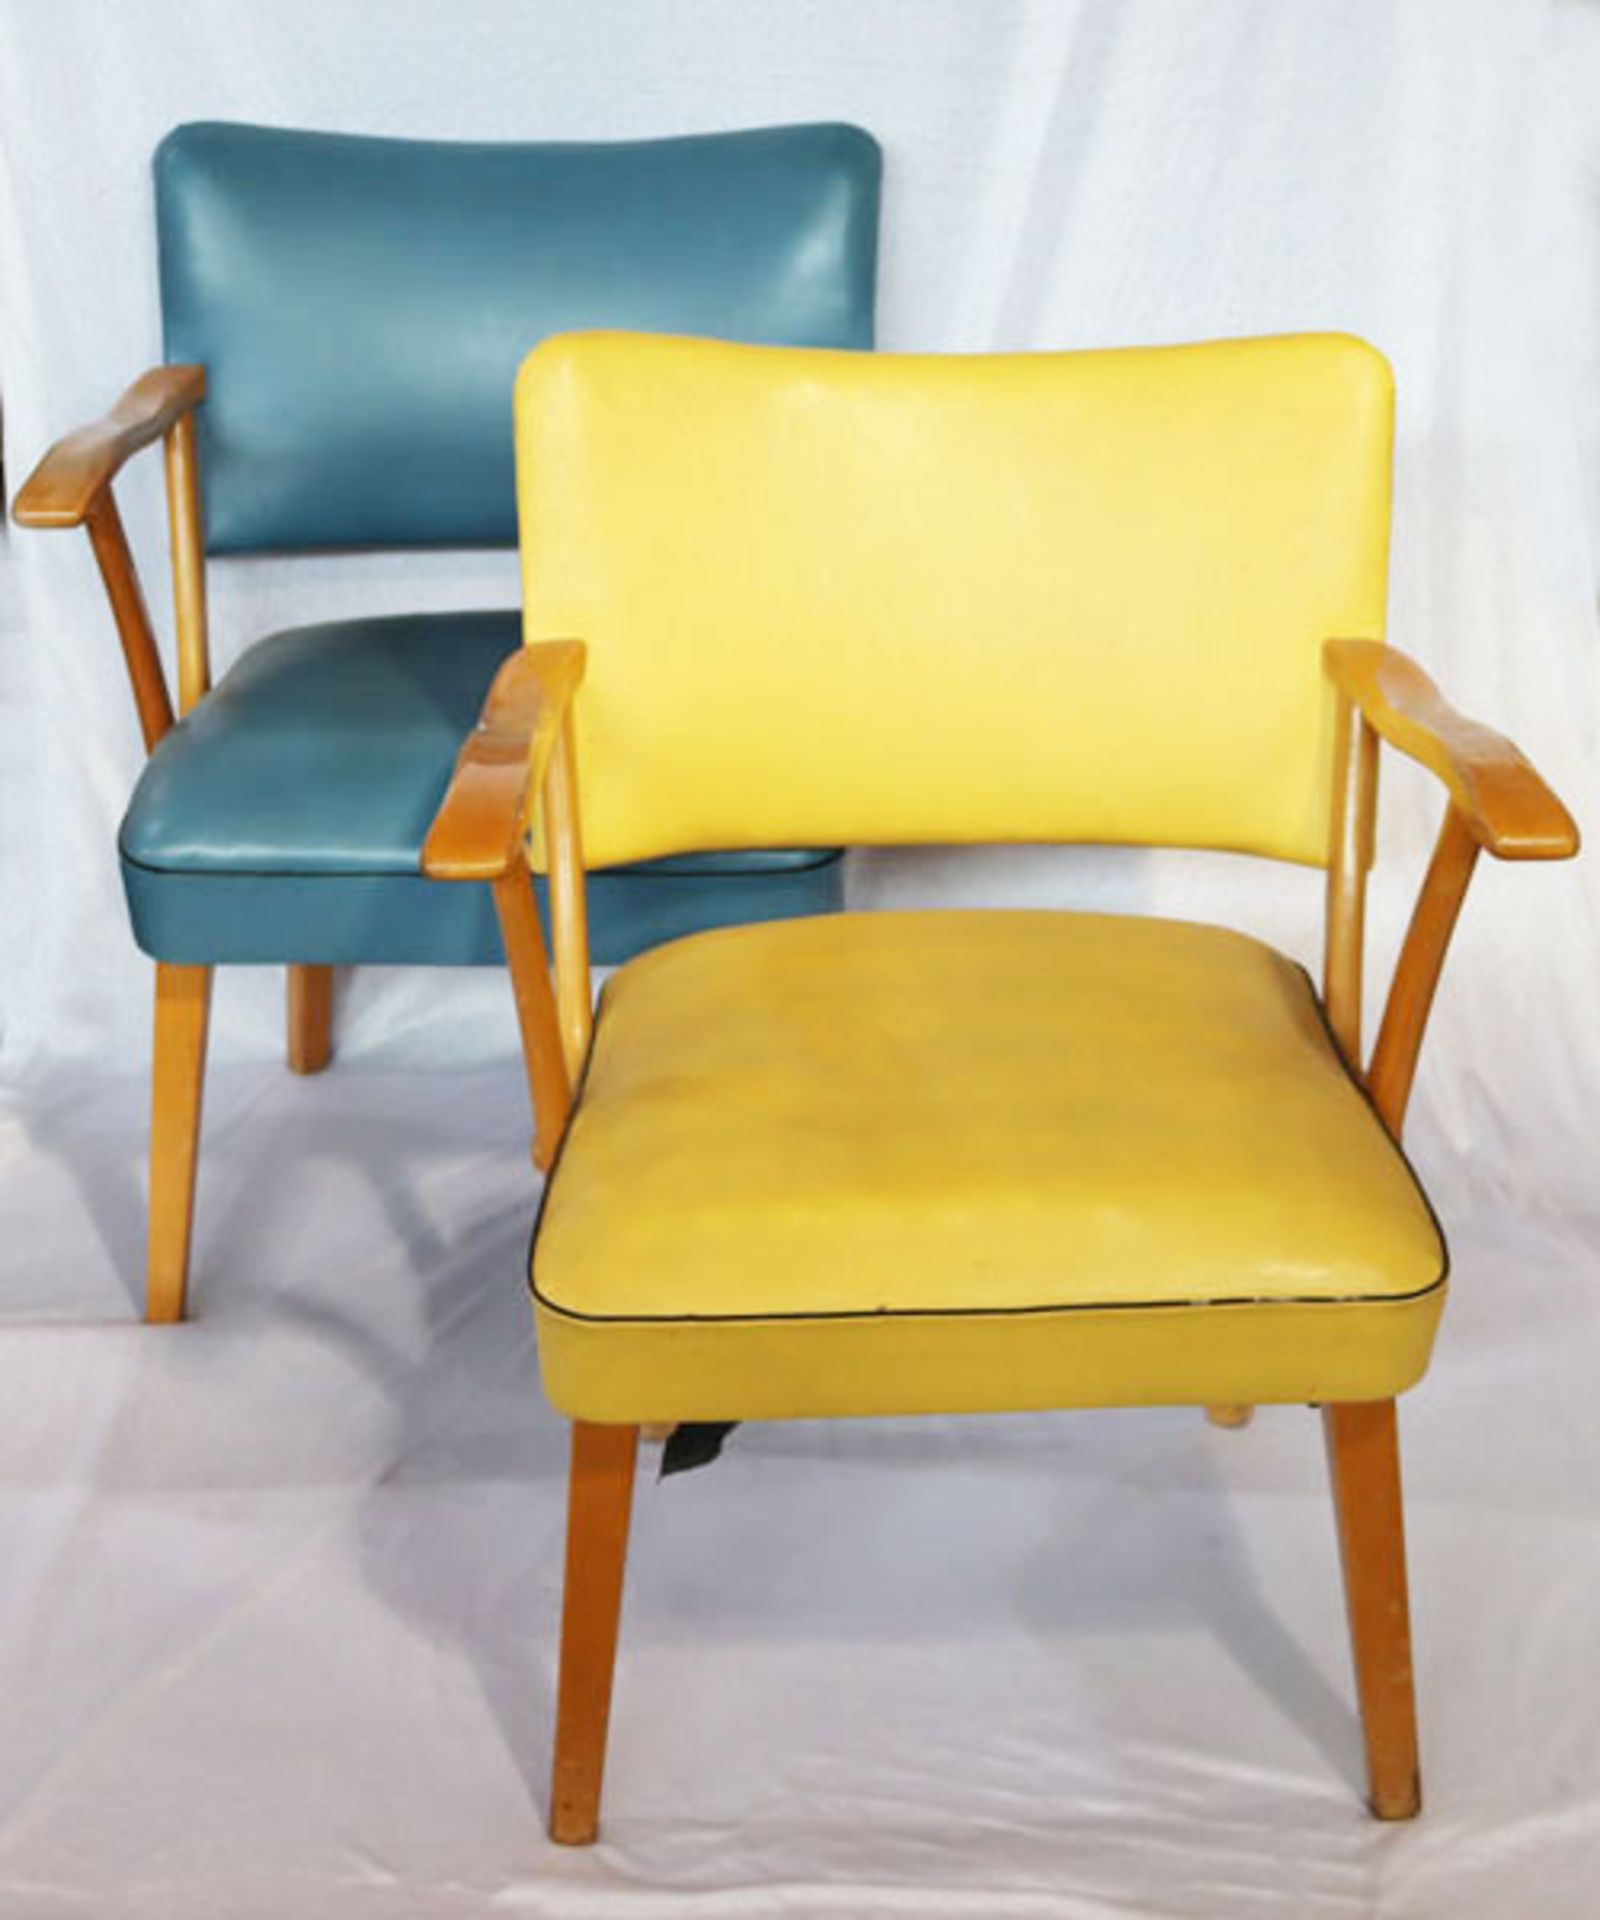 3 Armlehnstühle, Sitz und Lehne gepolstert und 2 blau und einer gelb mit Leder bezogen,